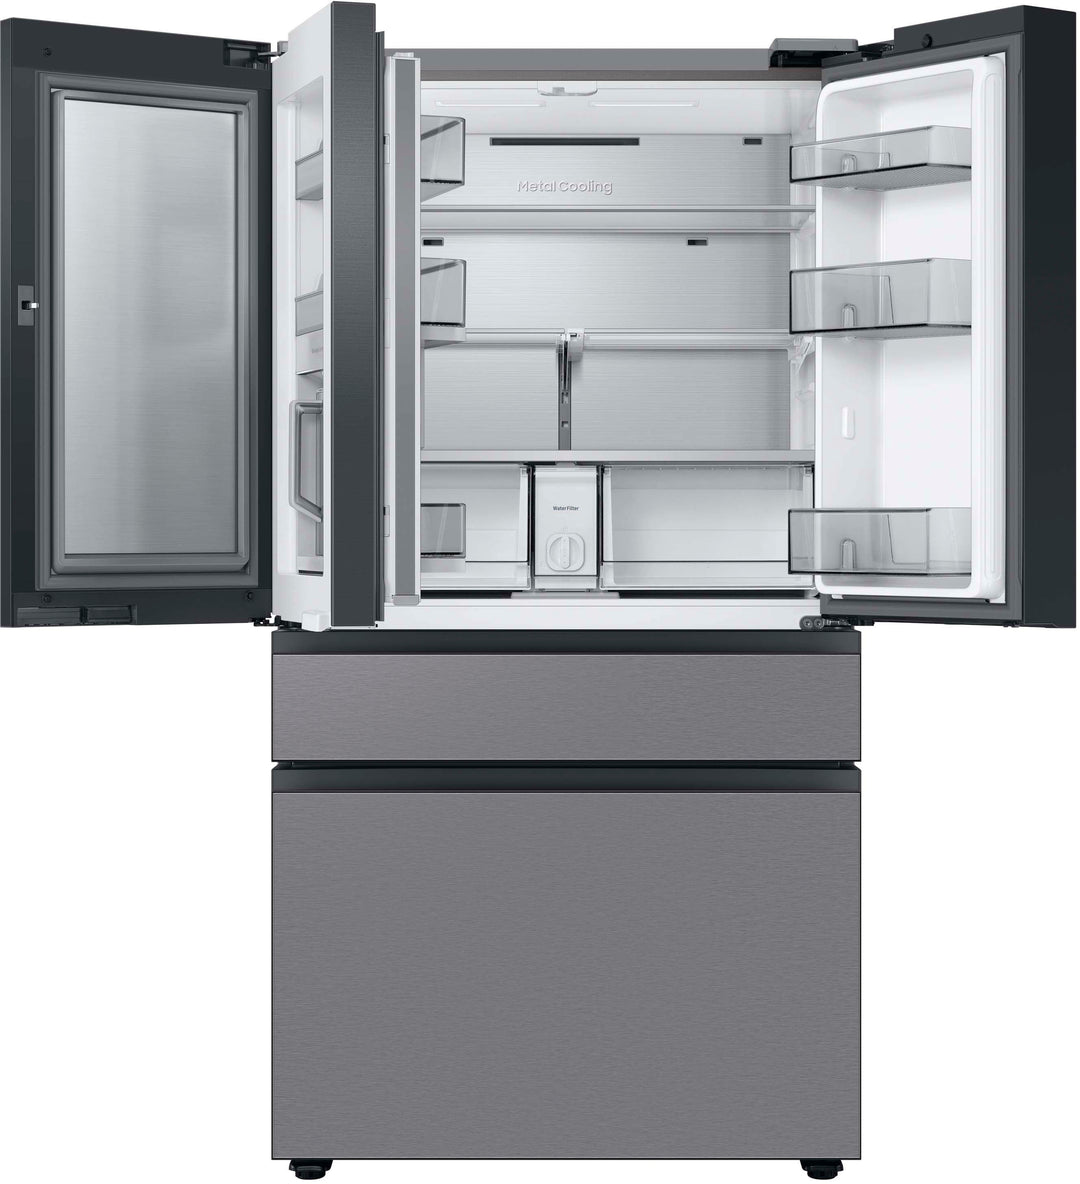 Samsung - Bespoke 23 cu. ft. Counter Depth 4-Door French Door Refrigerator with Beverage Center - Stainless steel_3